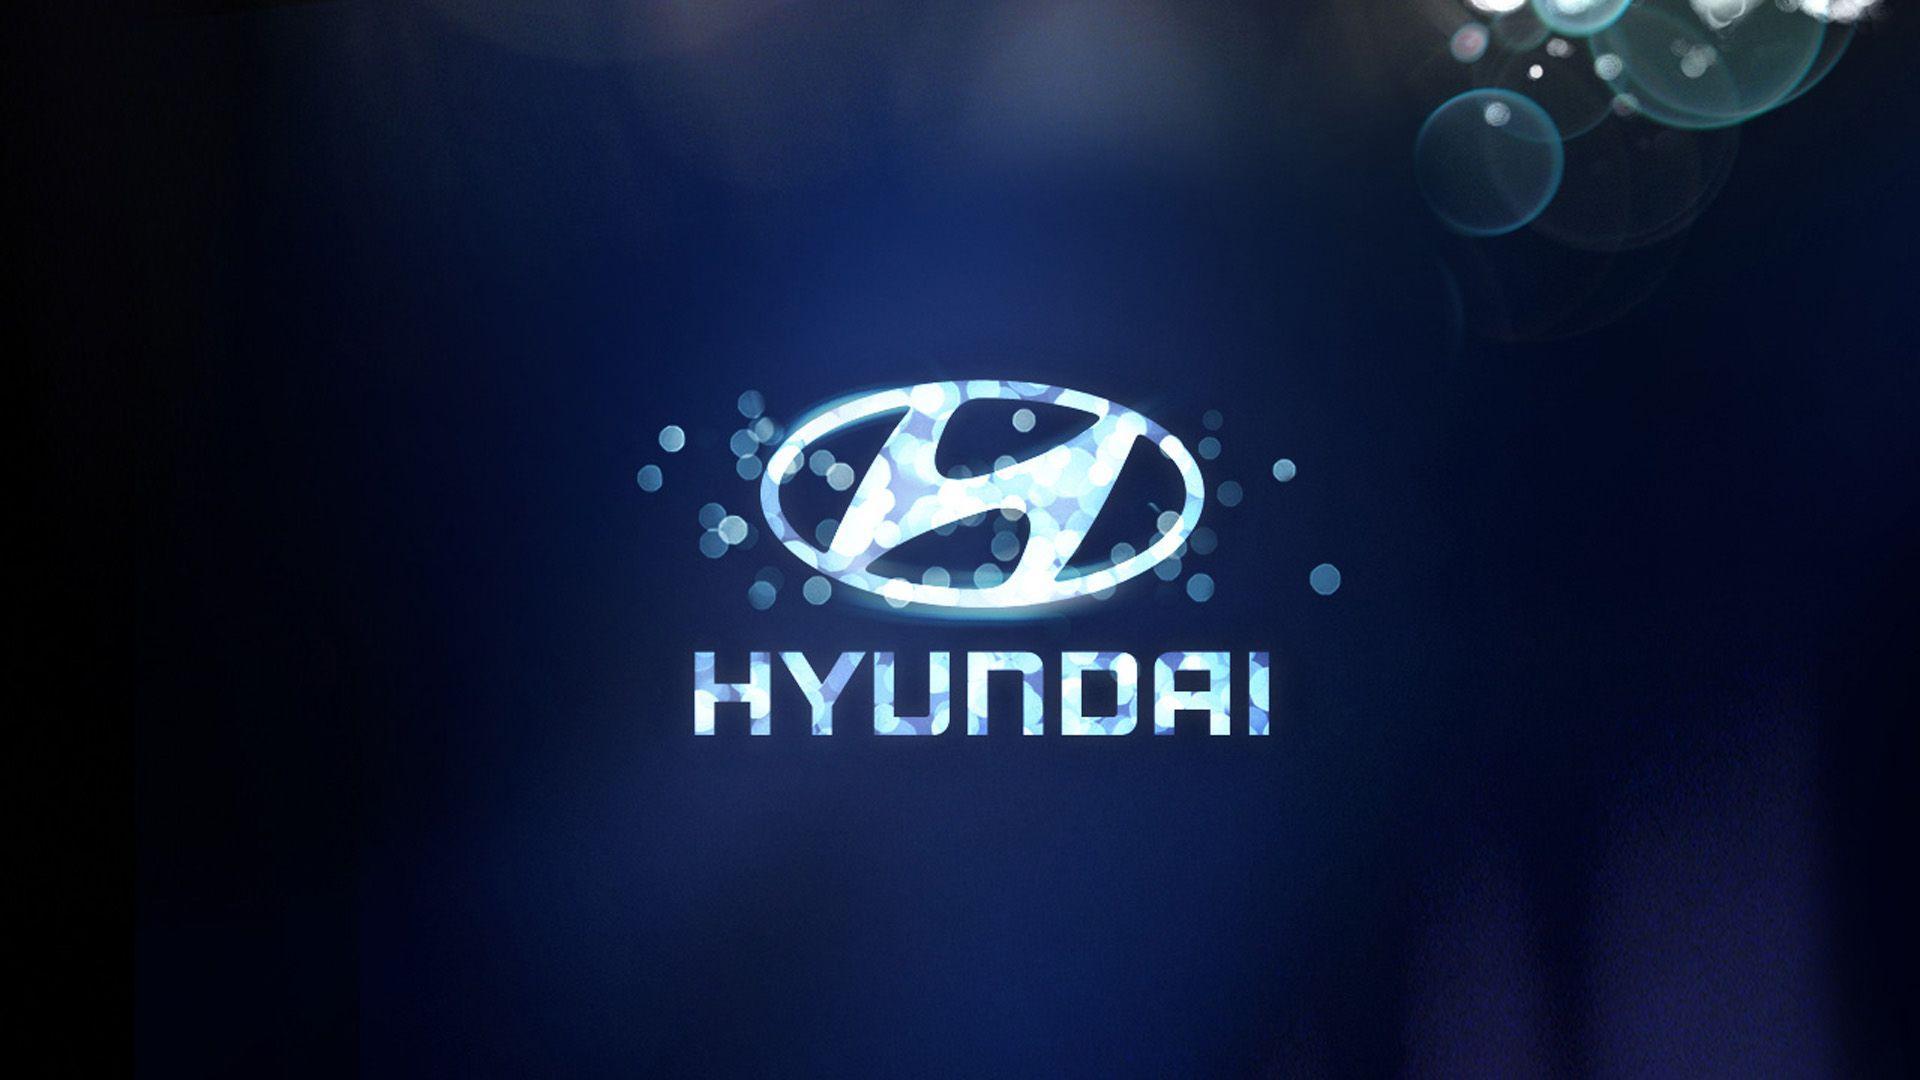 Hyundai Motor Company Wallpapers Top Free Hyundai Motor Company Backgrounds Wallpaperaccess